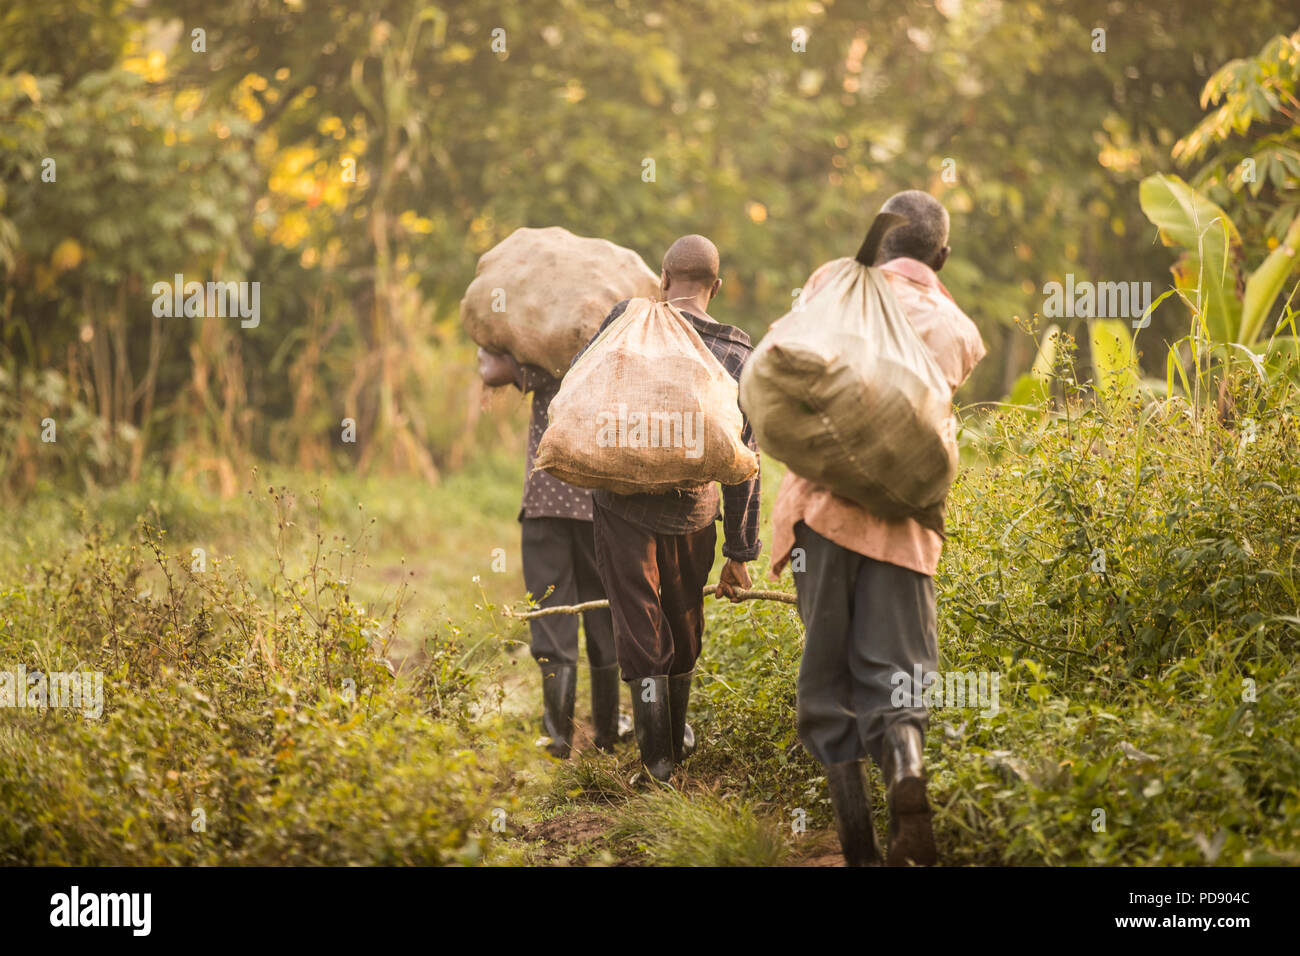 Arbeitnehmer Spaziergang durch einen Kakao Plantagen mit Säcken frisch geerntete Kakaobohne Pads in Mukono, Uganda, Ostafrika. Stockfoto